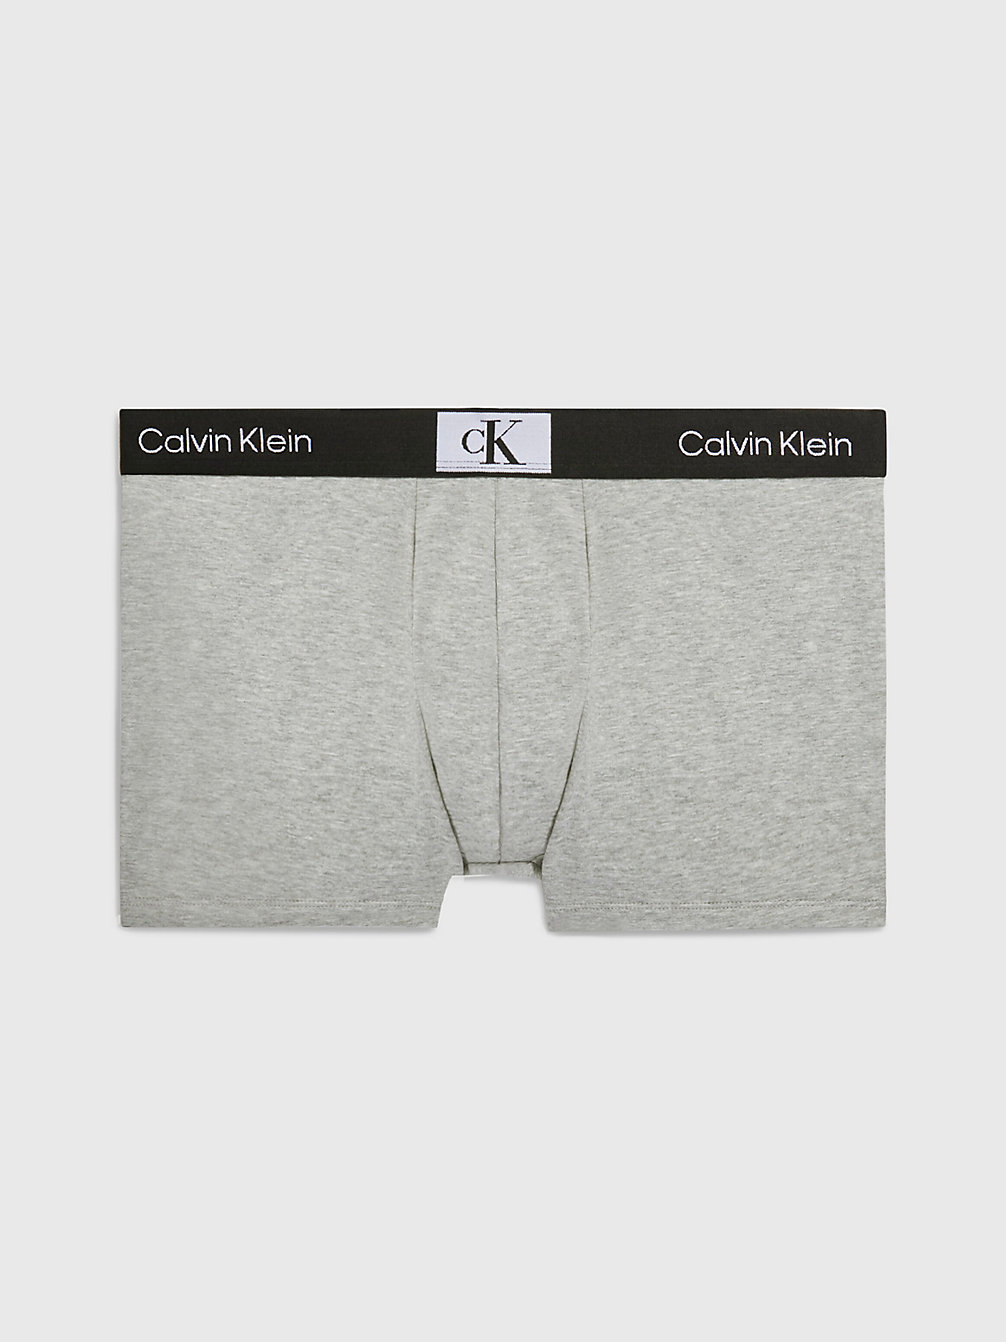 GREY HEATHER > Shorts - Ck96 > undefined Herren - Calvin Klein